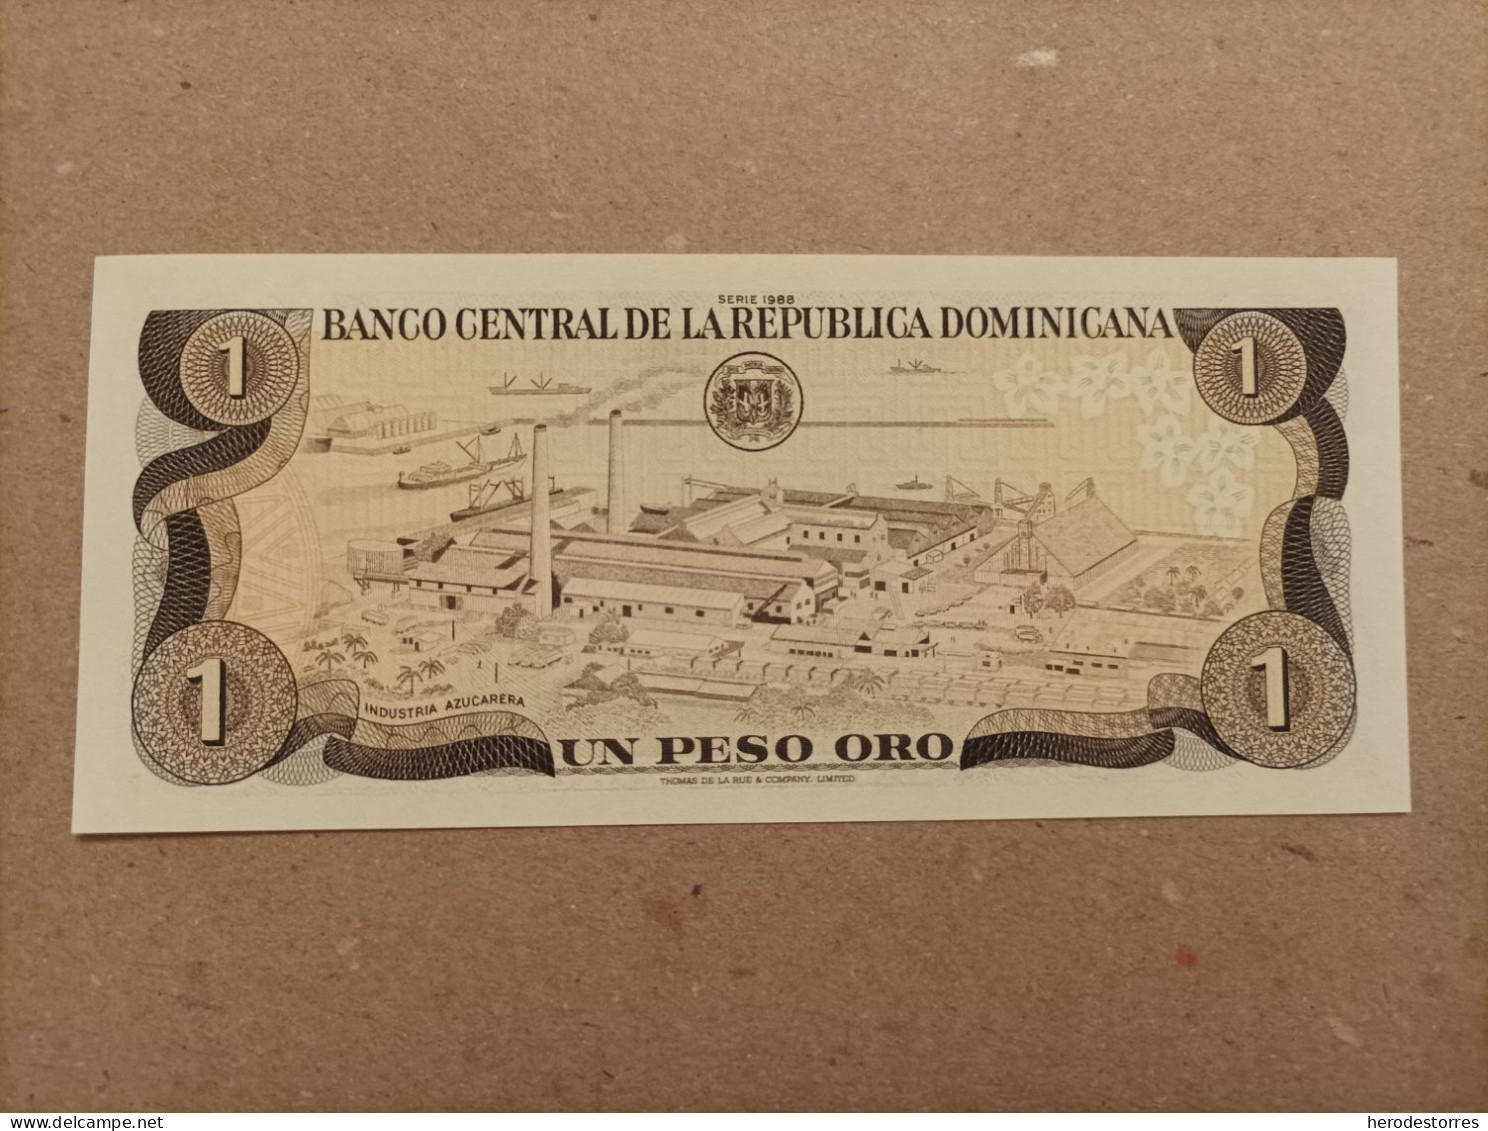 Billete De Republica Dominicana De 1 Peso Oro, Año 1988, UNC - Dominicaine